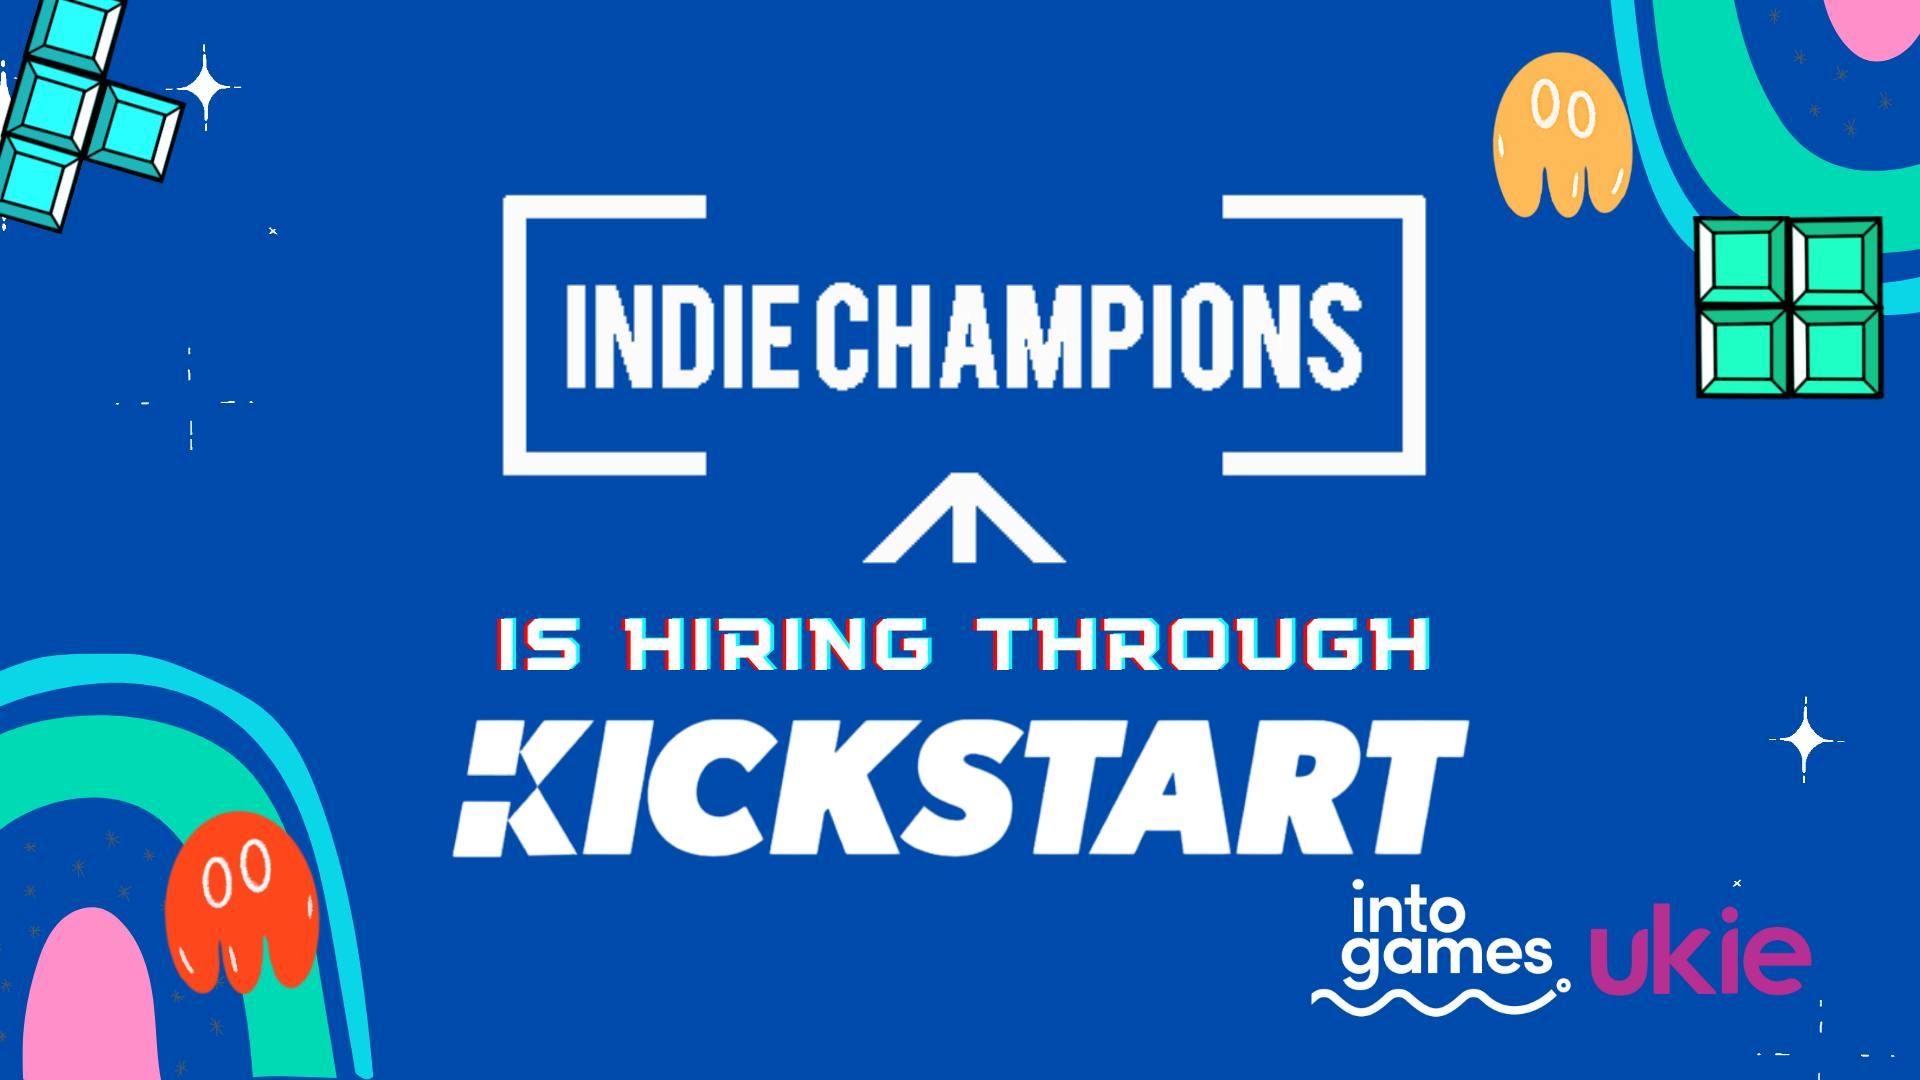 Indie Champions - We're Hiring Through the Kickstart Scheme